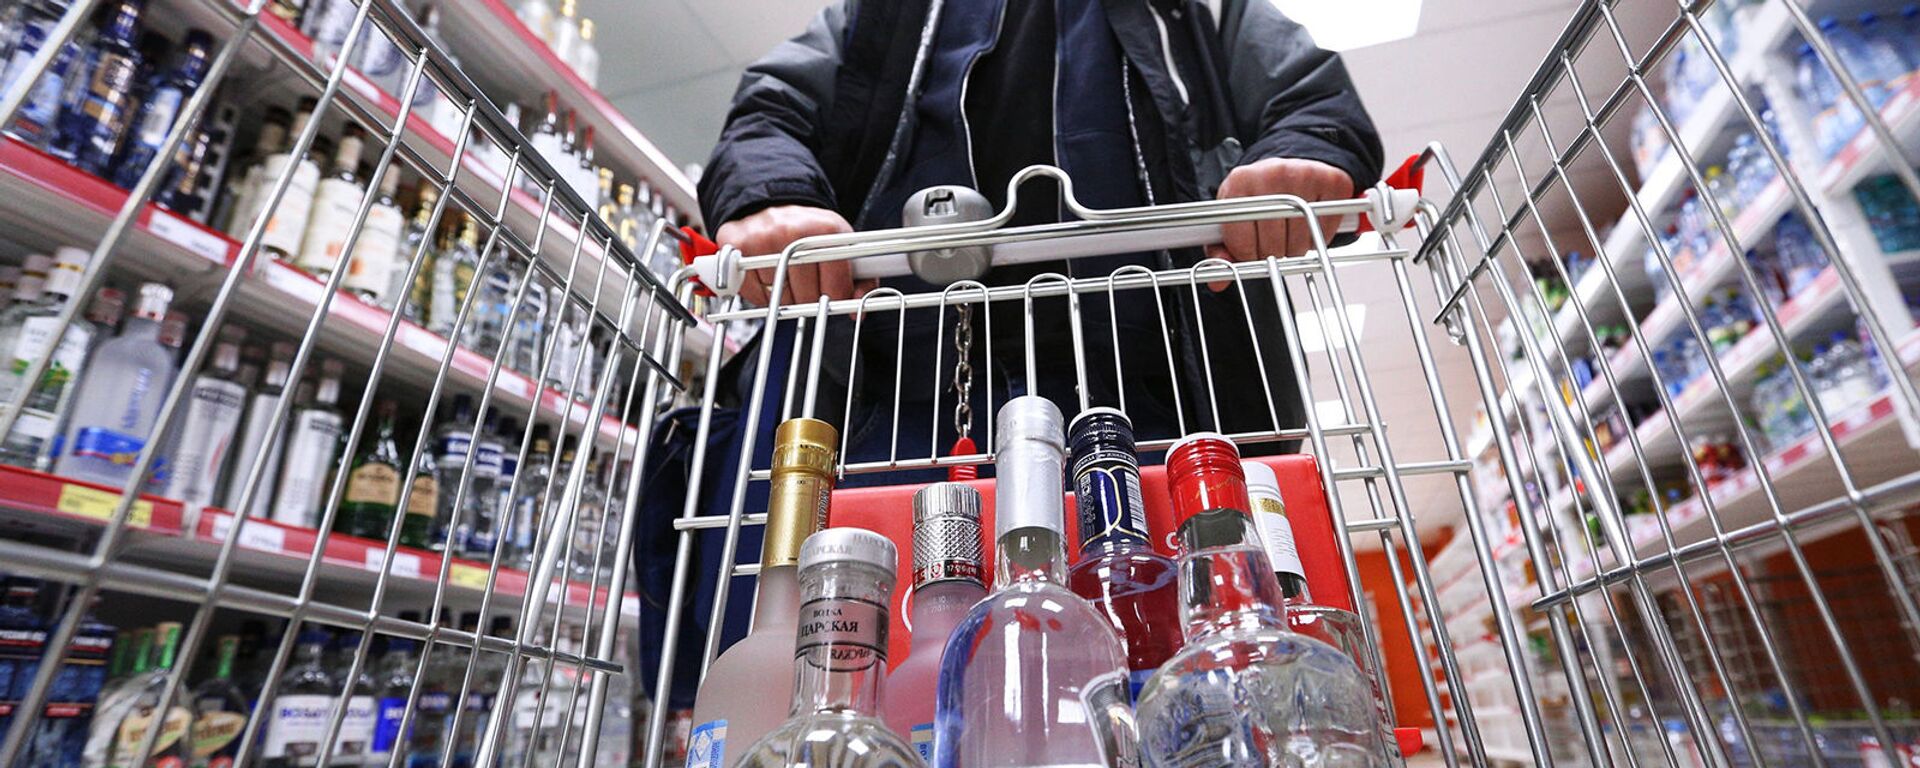 Мужчина в отделе алкогольной продукции супермаркета - Sputnik Армения, 1920, 21.11.2018